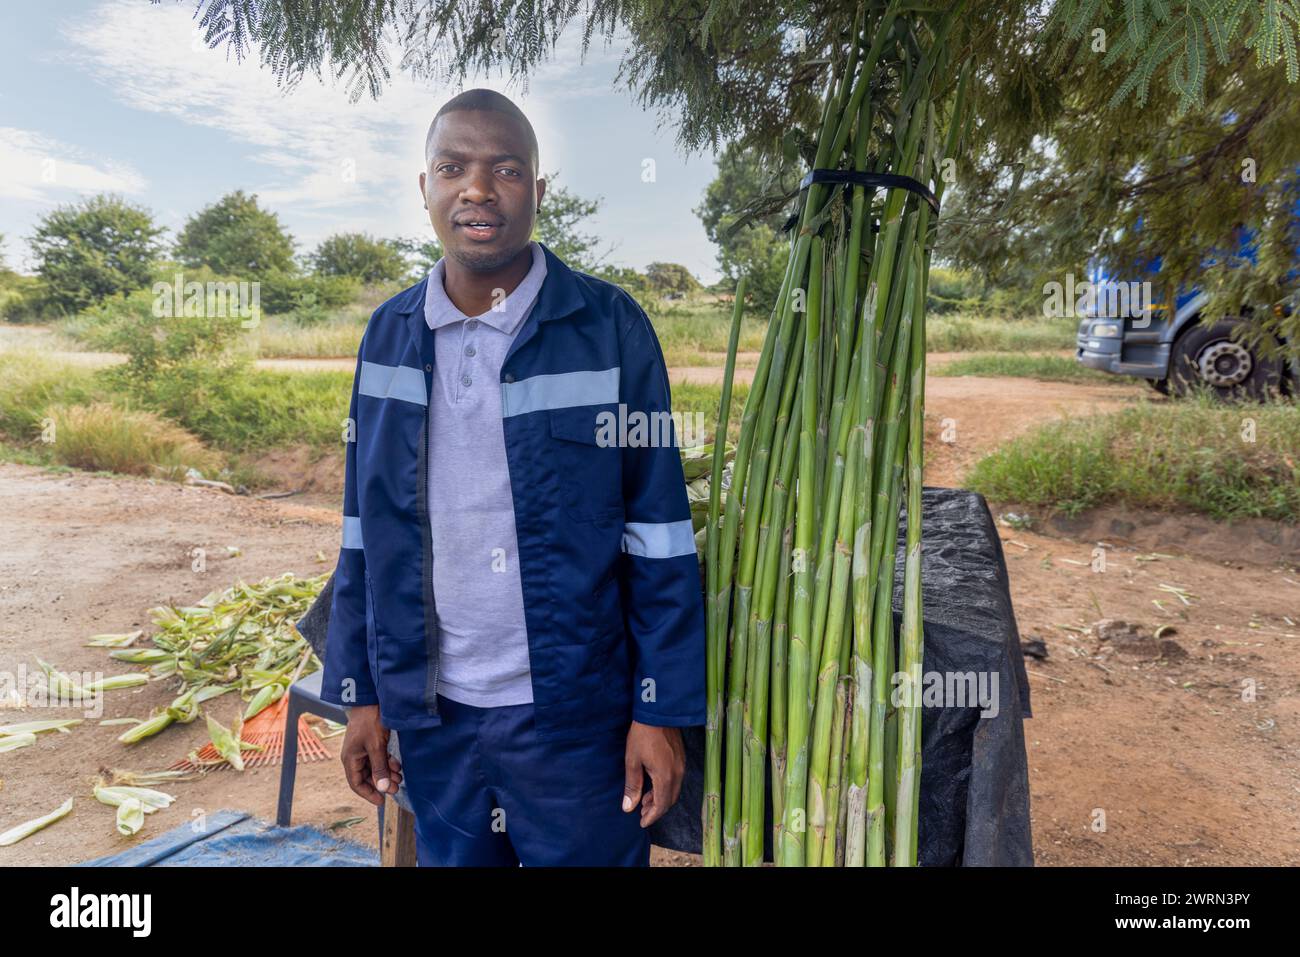 afrikanischer Straßenverkäufer, der Mais und süßes Schilf verkauft, Zuckerrohr am Straßenrand Stockfoto